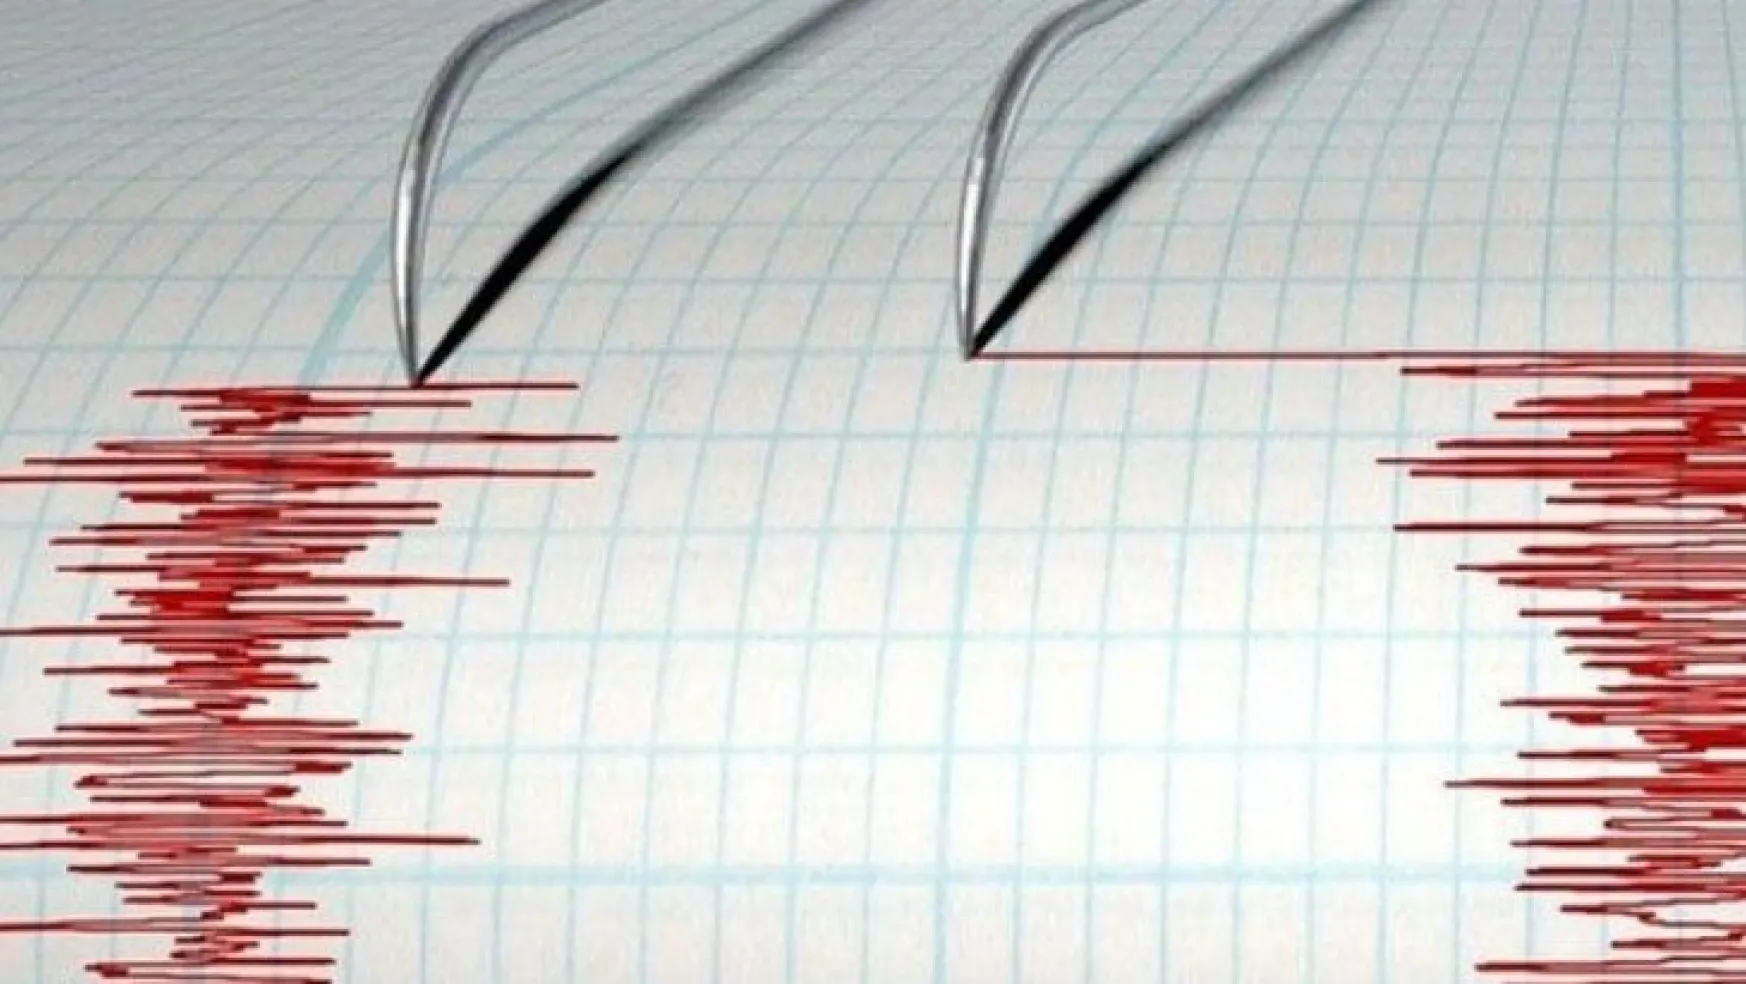 Kars'ta aynı anda 4.0 büyüklüğünde iki deprem!